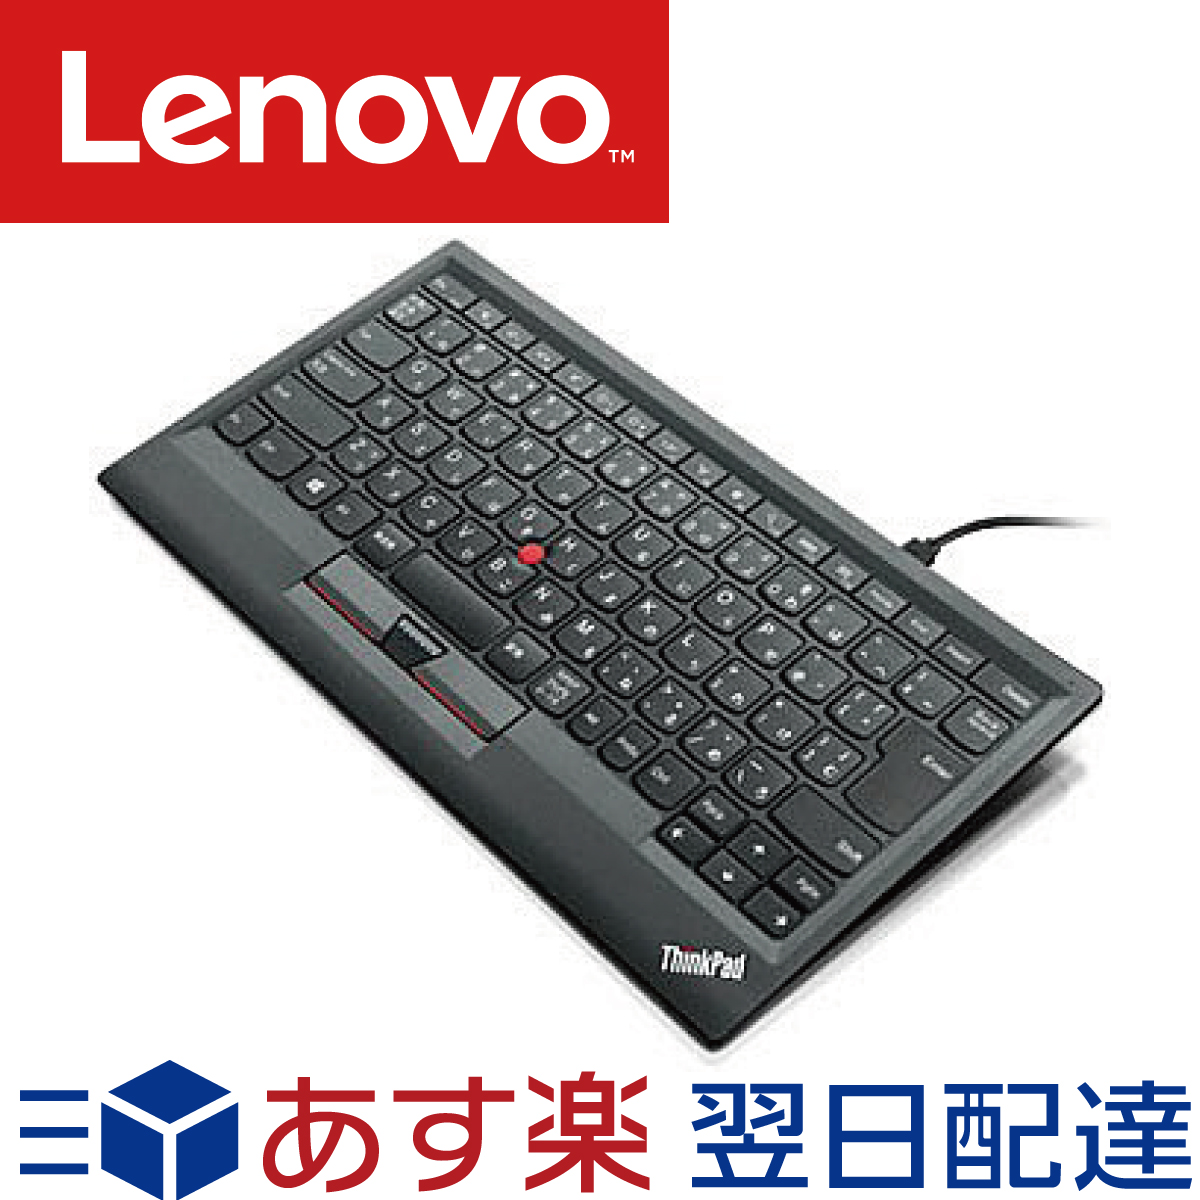 あす楽 送料無料 ポイント消化 メーカー純正品 3年保証 使い勝手の良い 日時指定 Lenovo レノボ USB接続 ThinkPad キーボード 日本語 0B47208 ブラック トラックポイント